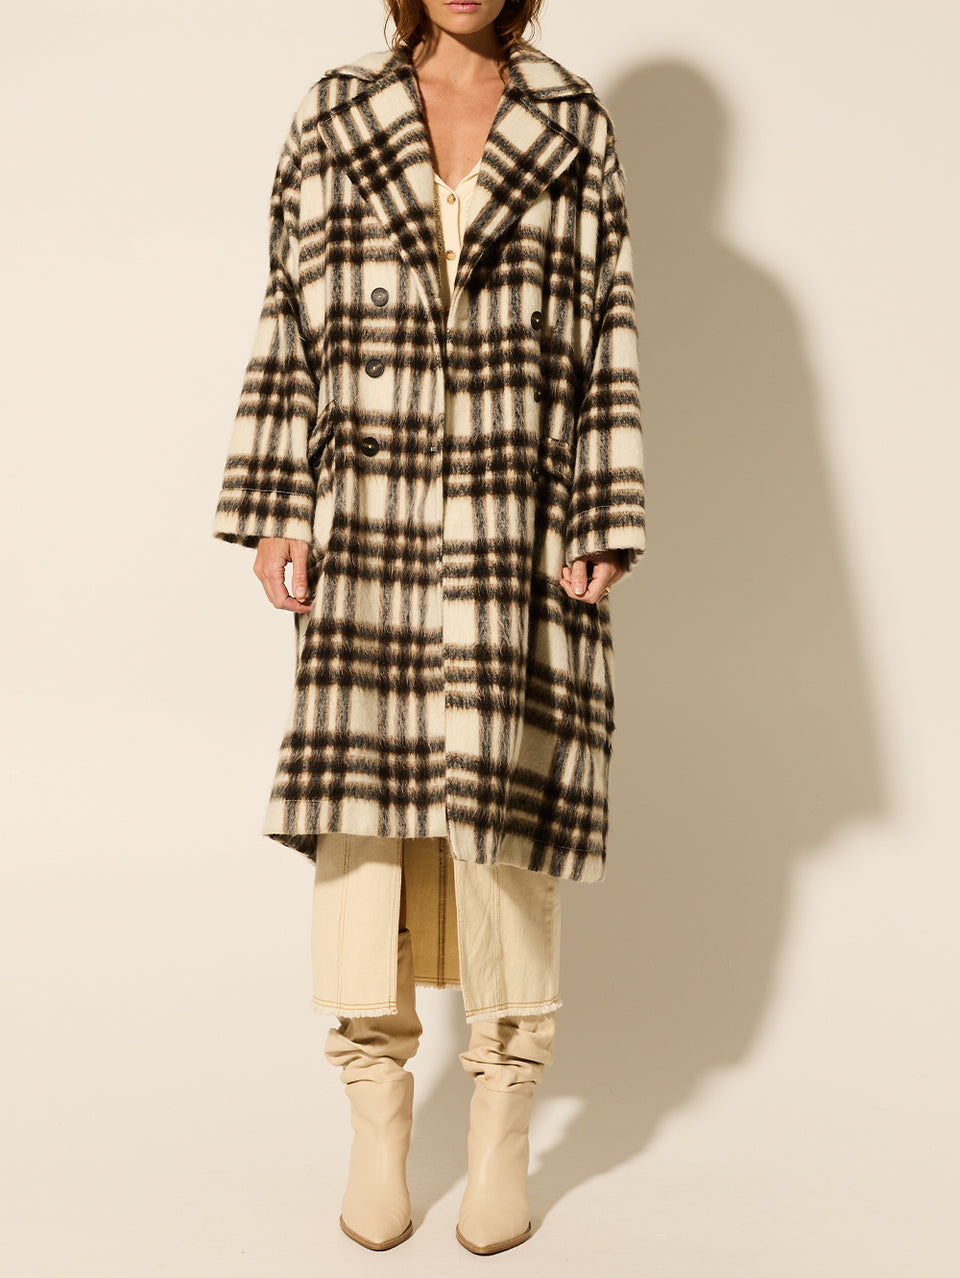 Kinley Coat KIVARI | Model wears brown check coat